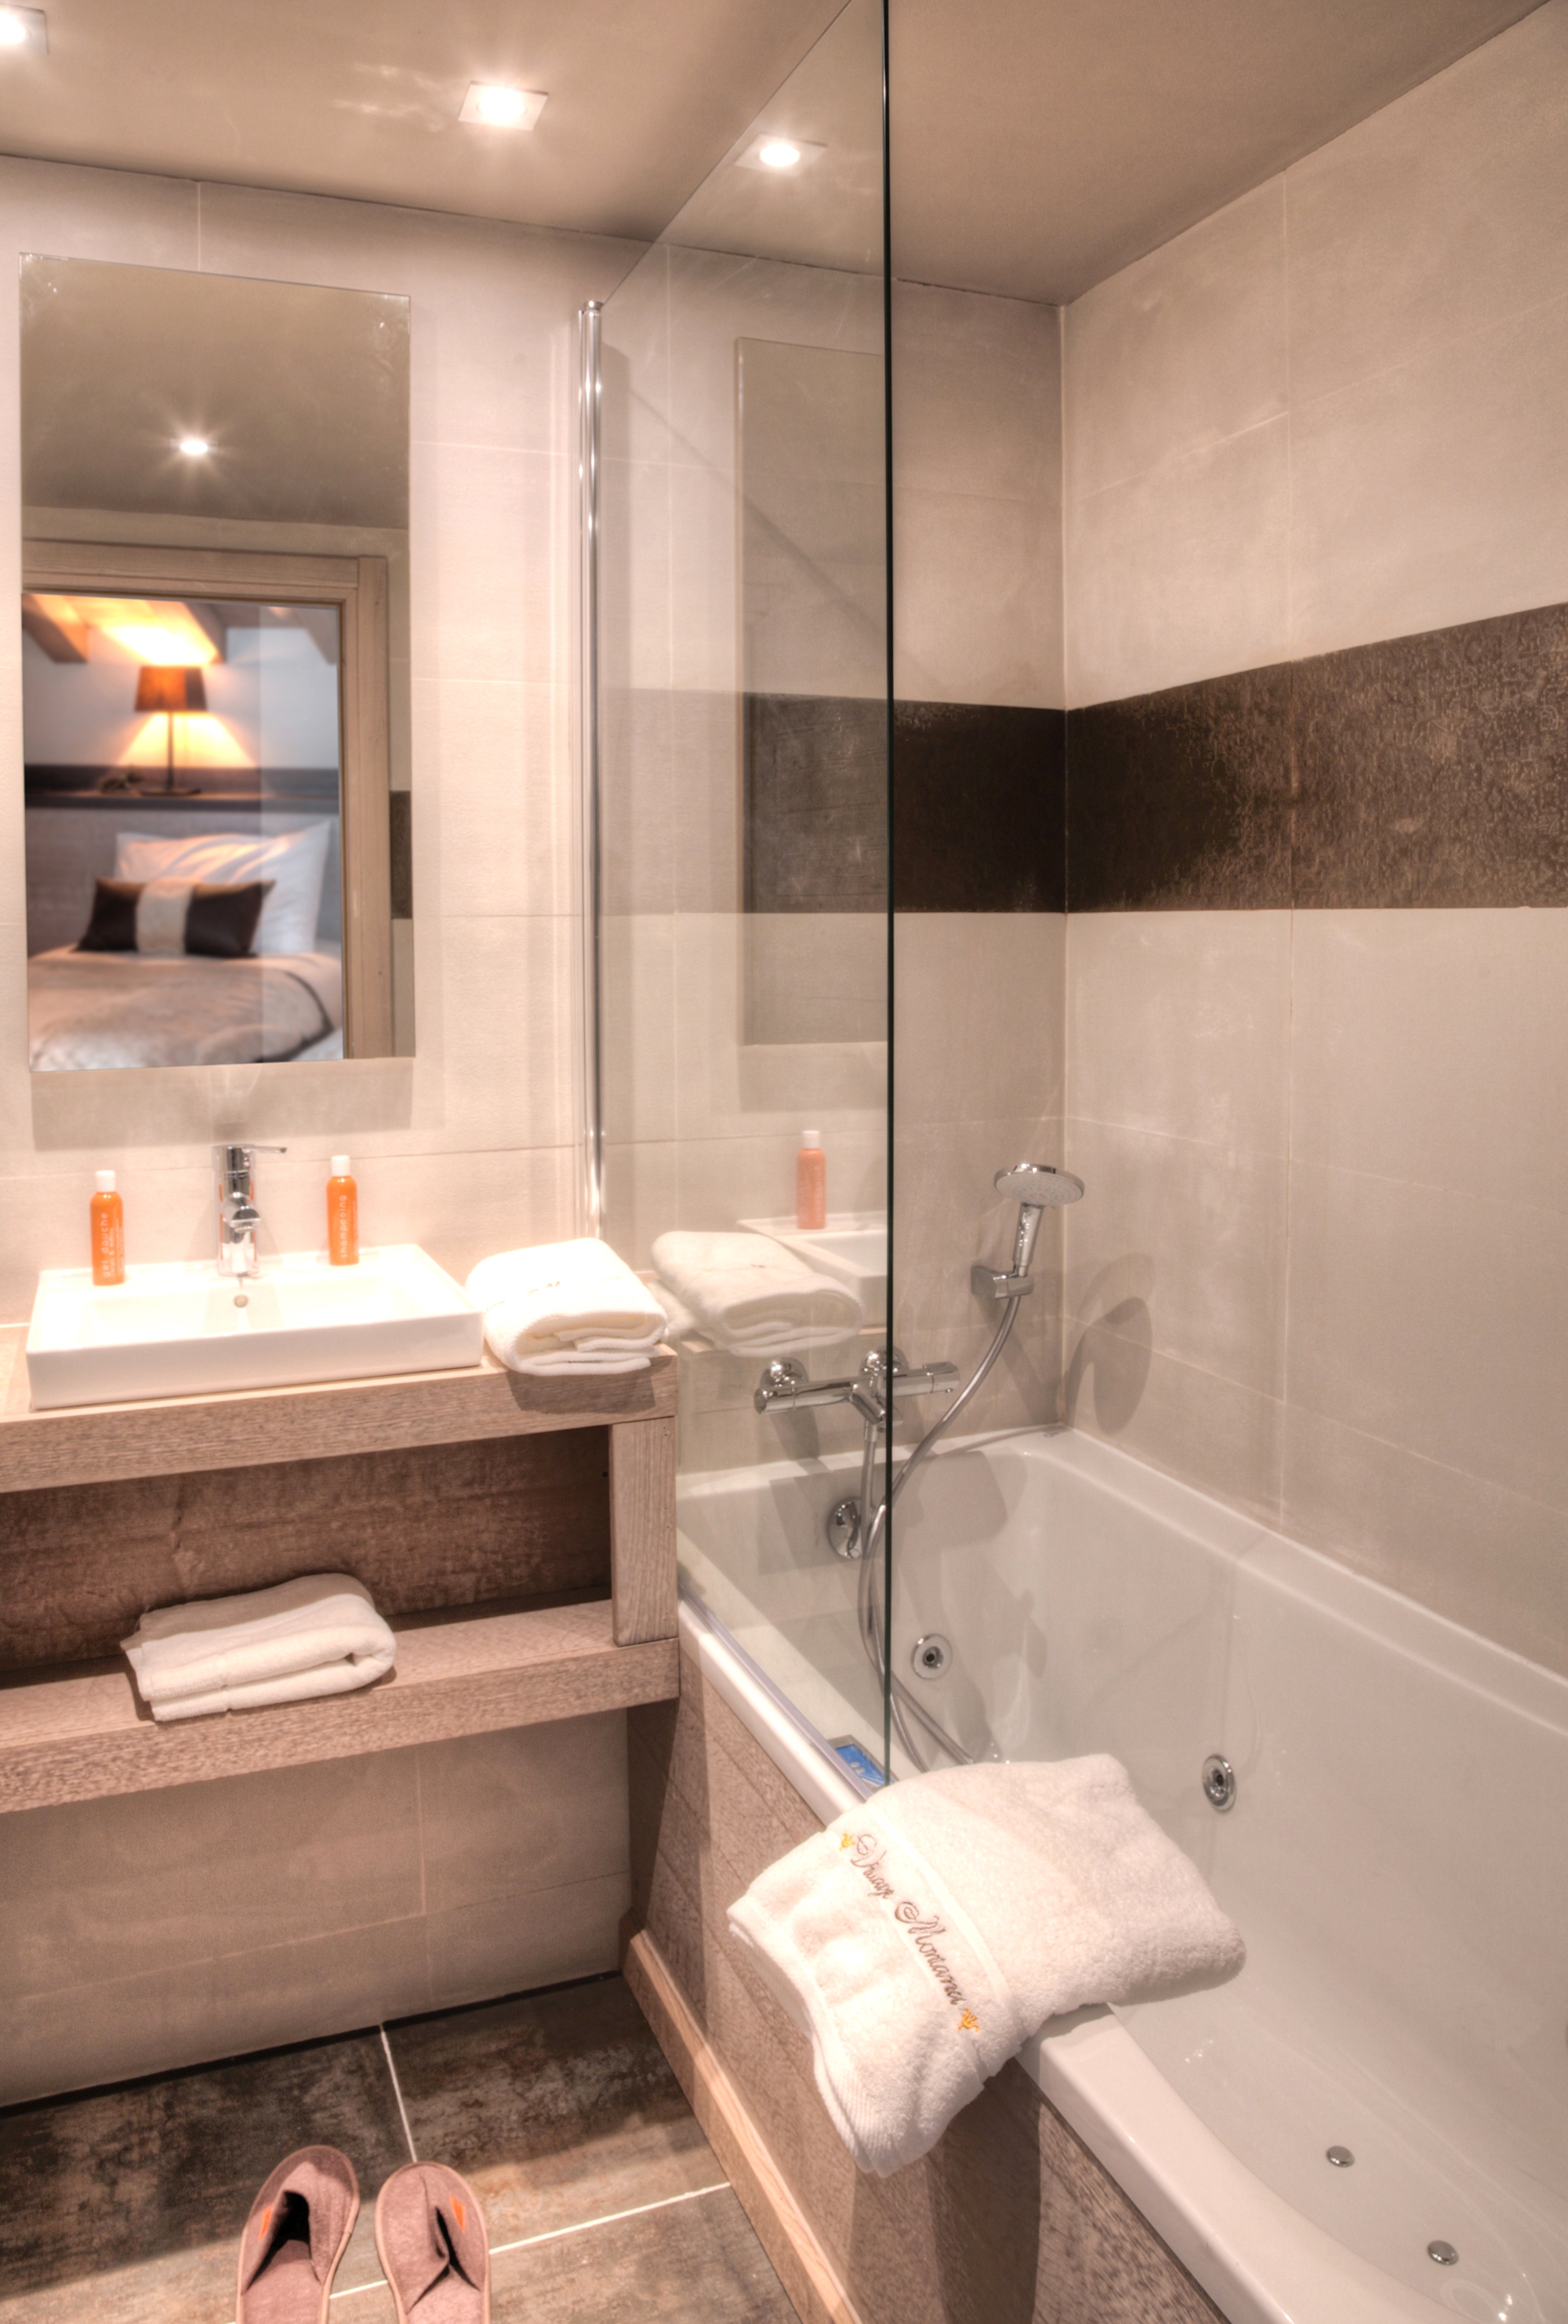 Plein Sud: Appartement für 6 Personen - Bad mit Whirlpool-Badewanne (Beispiel)